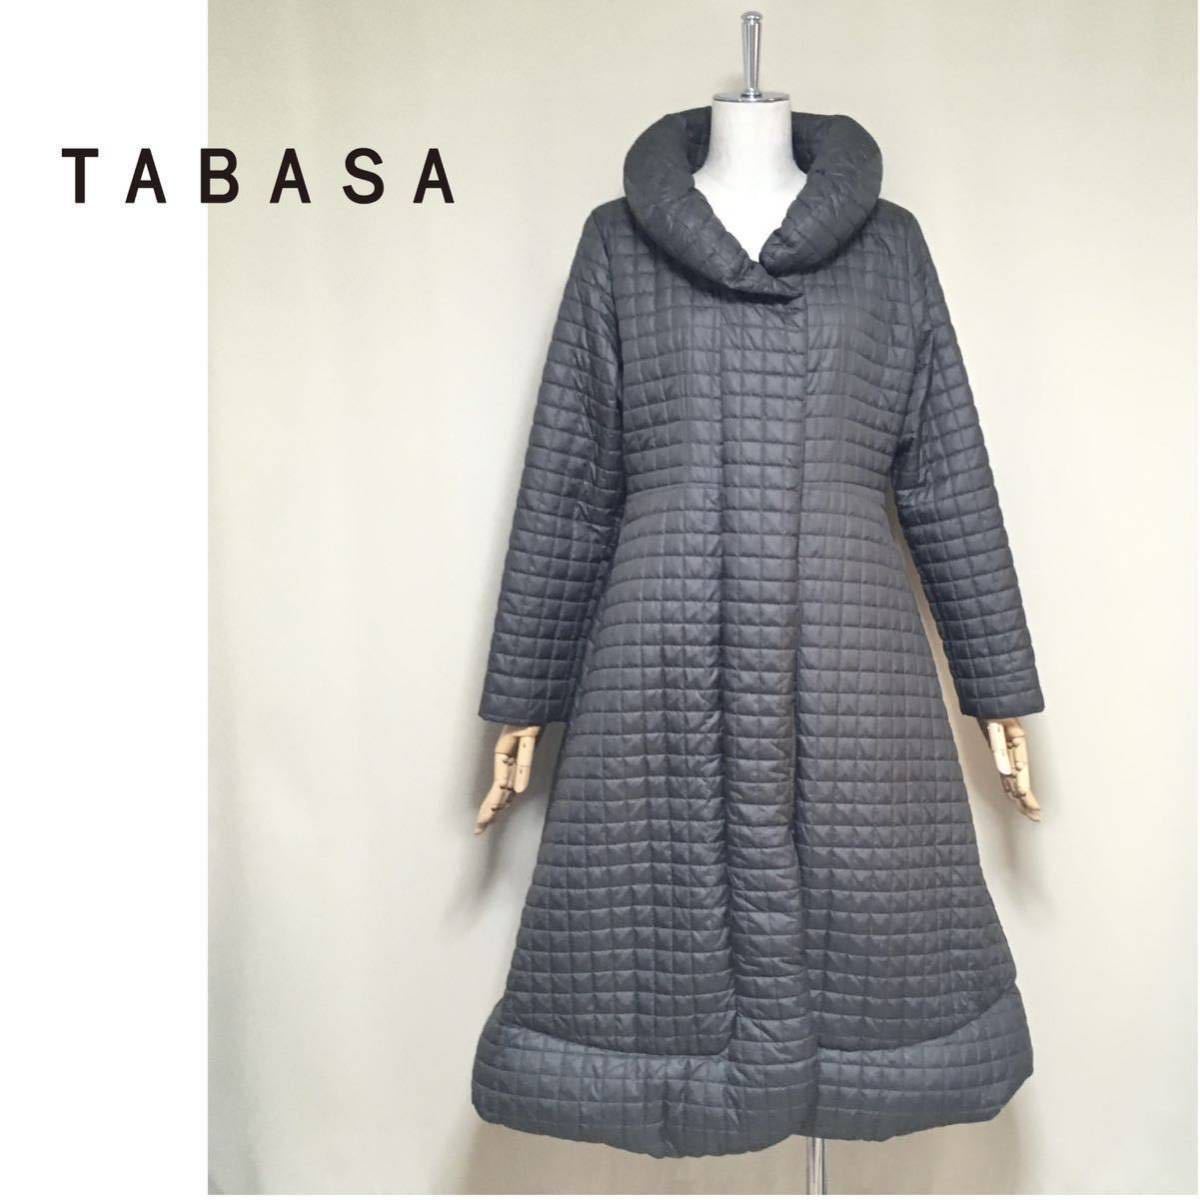 【TABASA】タバサ ショールカラー 中綿 キルティング ロングコート 大きめ34/M〜Lサイズ相当 チャコールグレー レディース_画像1